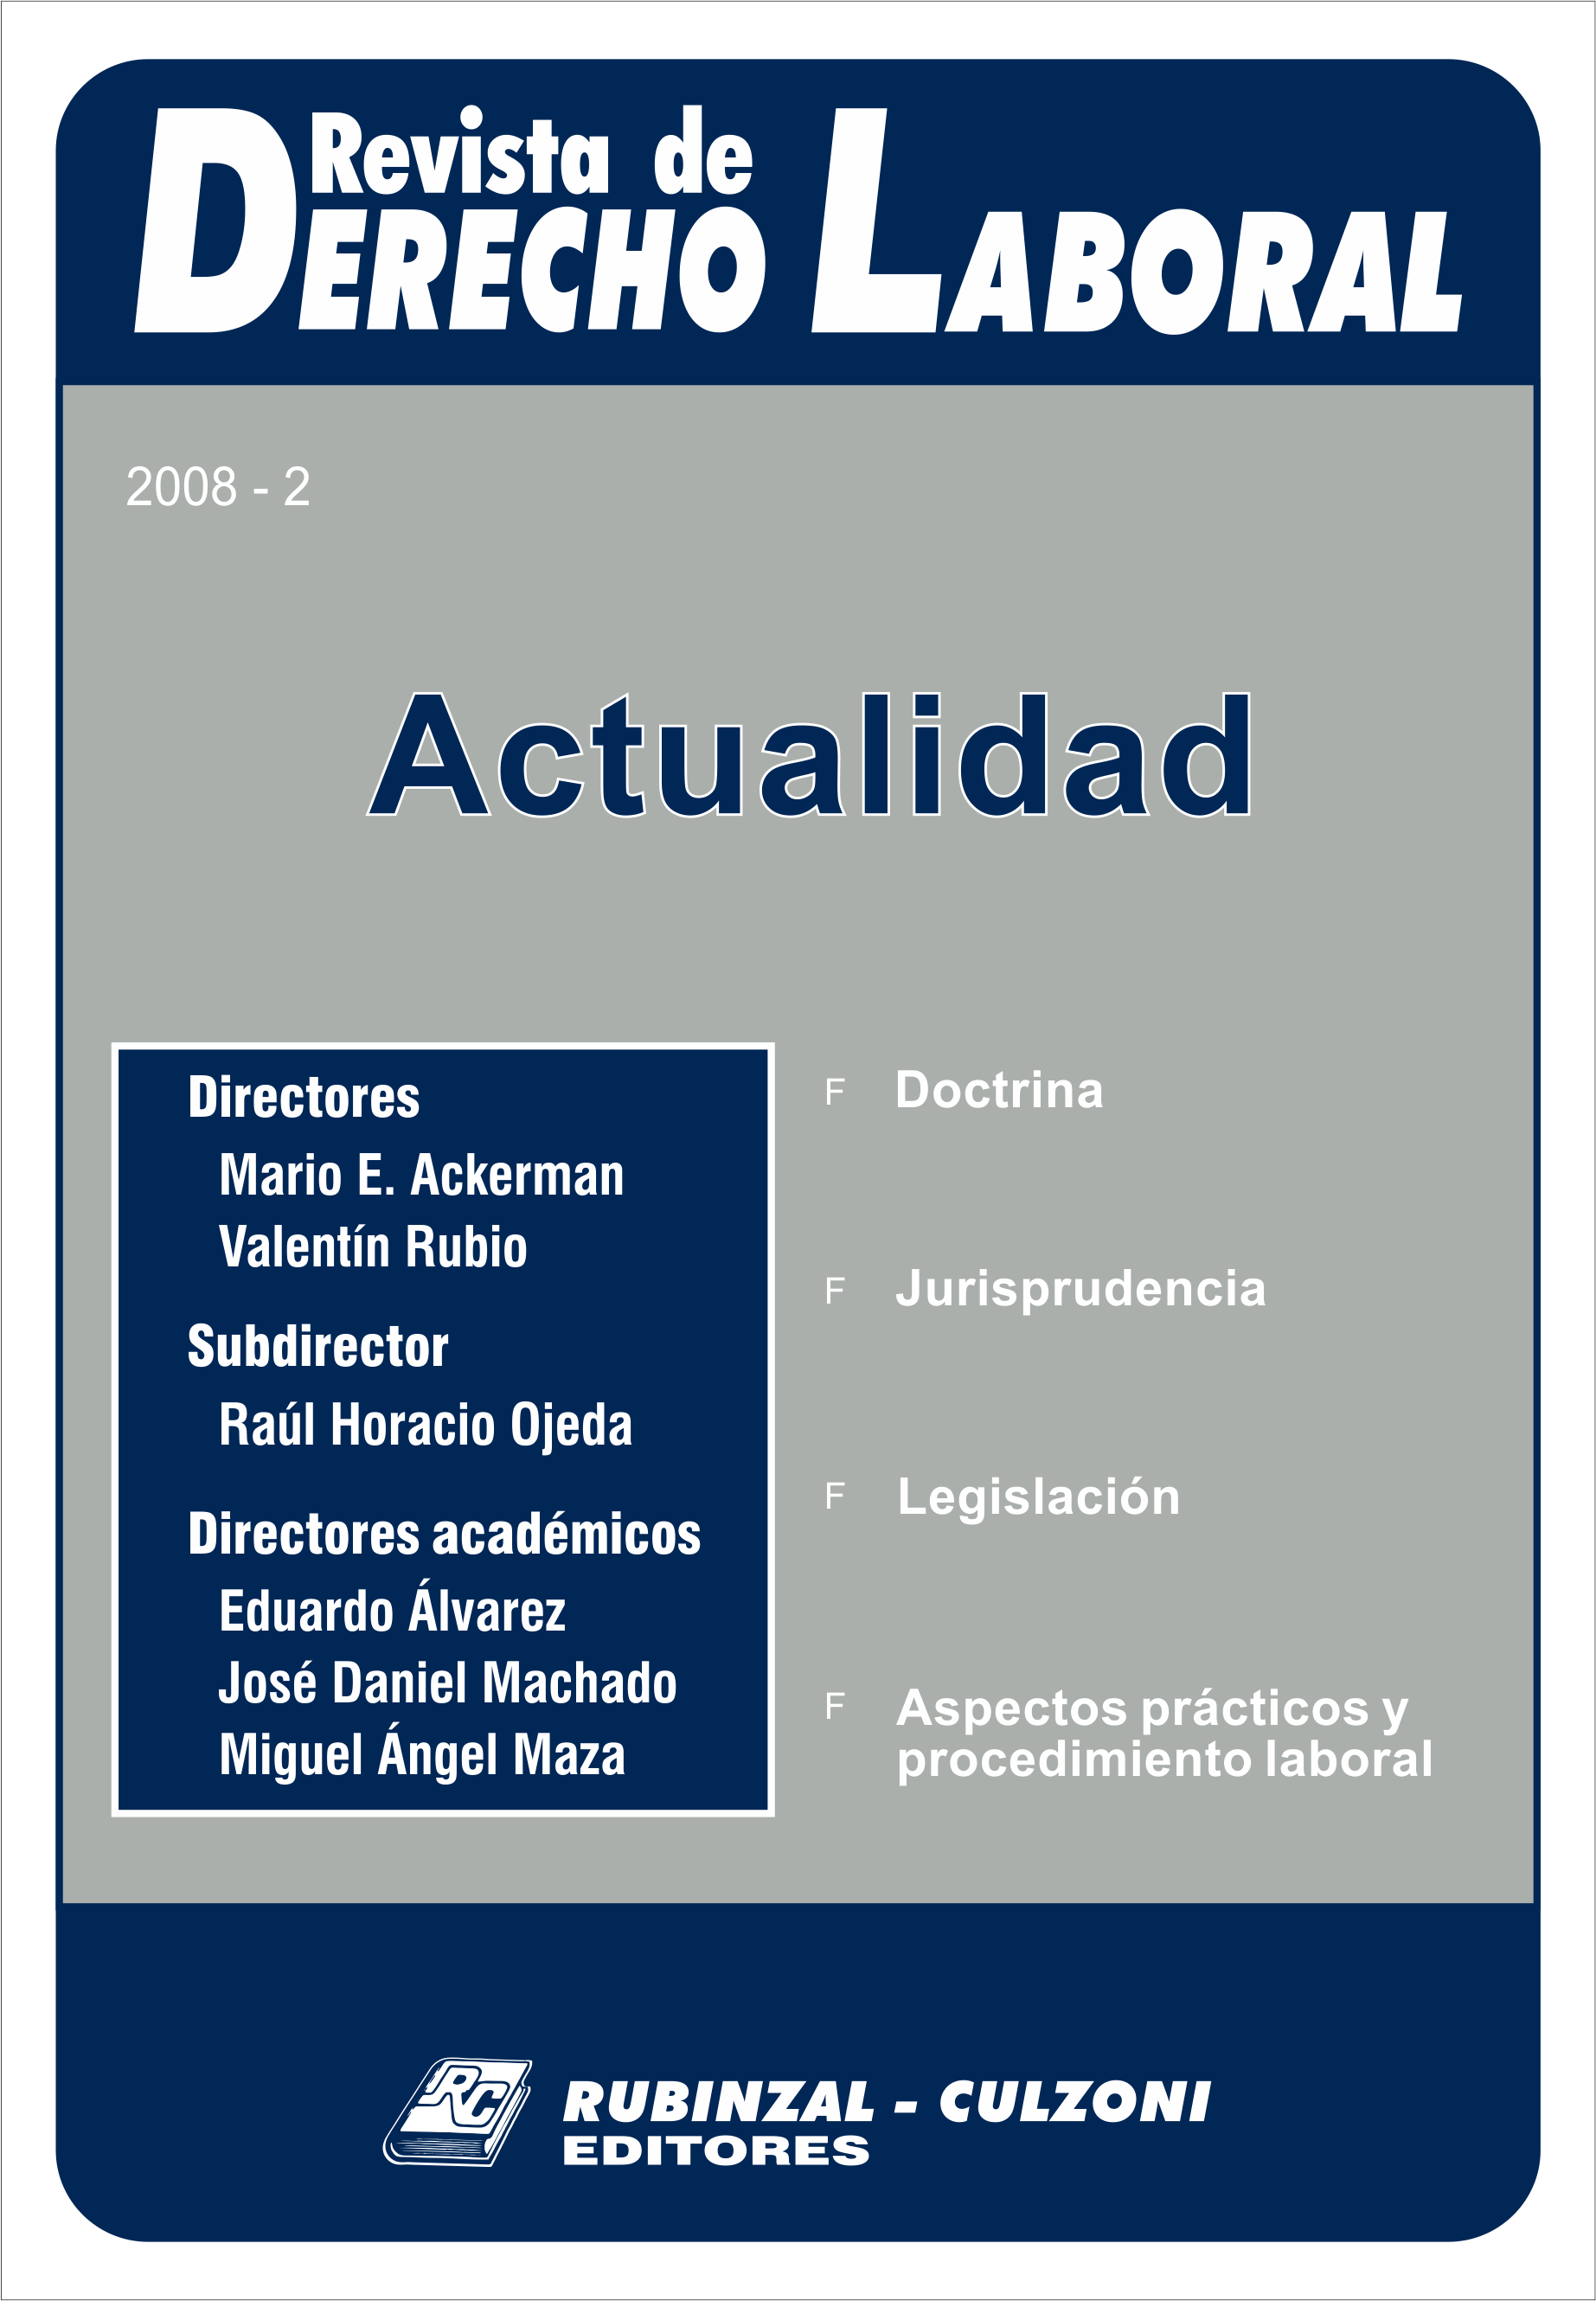  Actualidad - Año 2008 - 2. [2008-2]